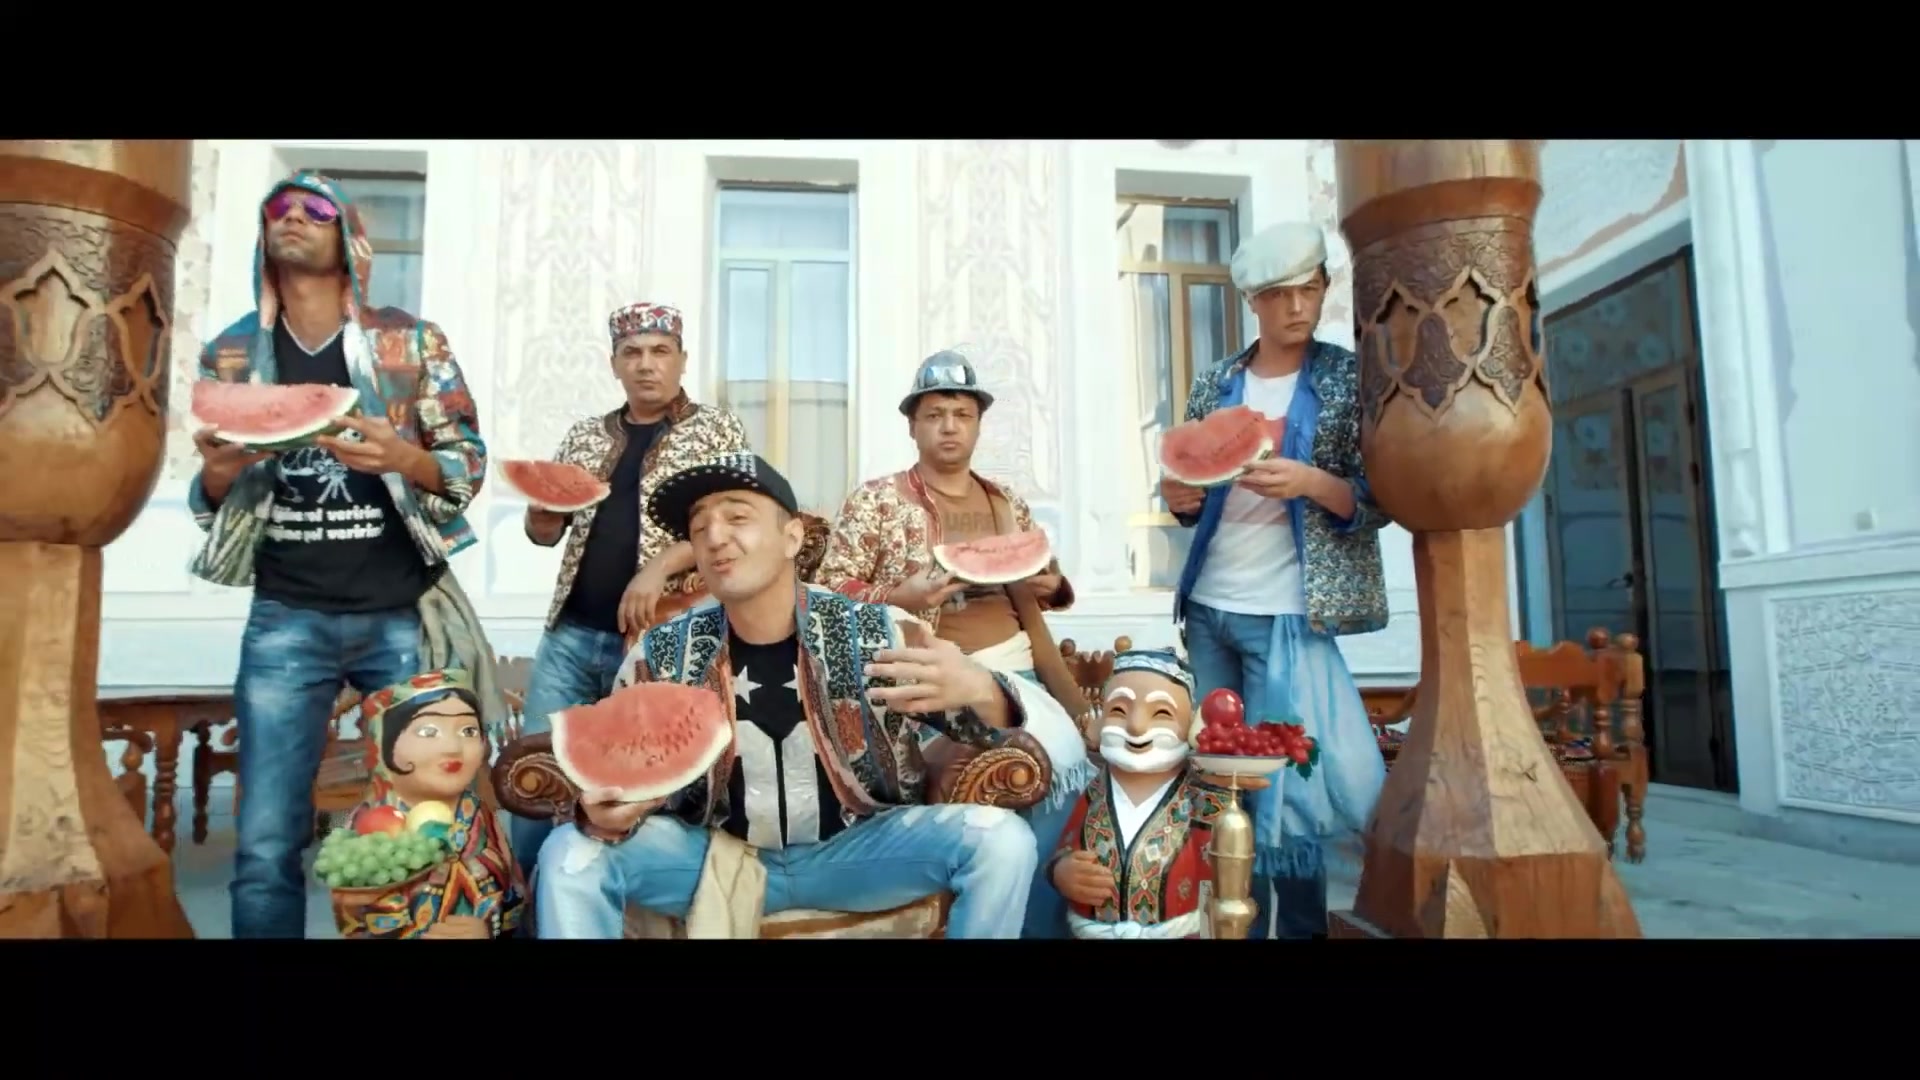 乌兹别克斯坦歌曲《boyvachcha》,bojalar的经典歌曲